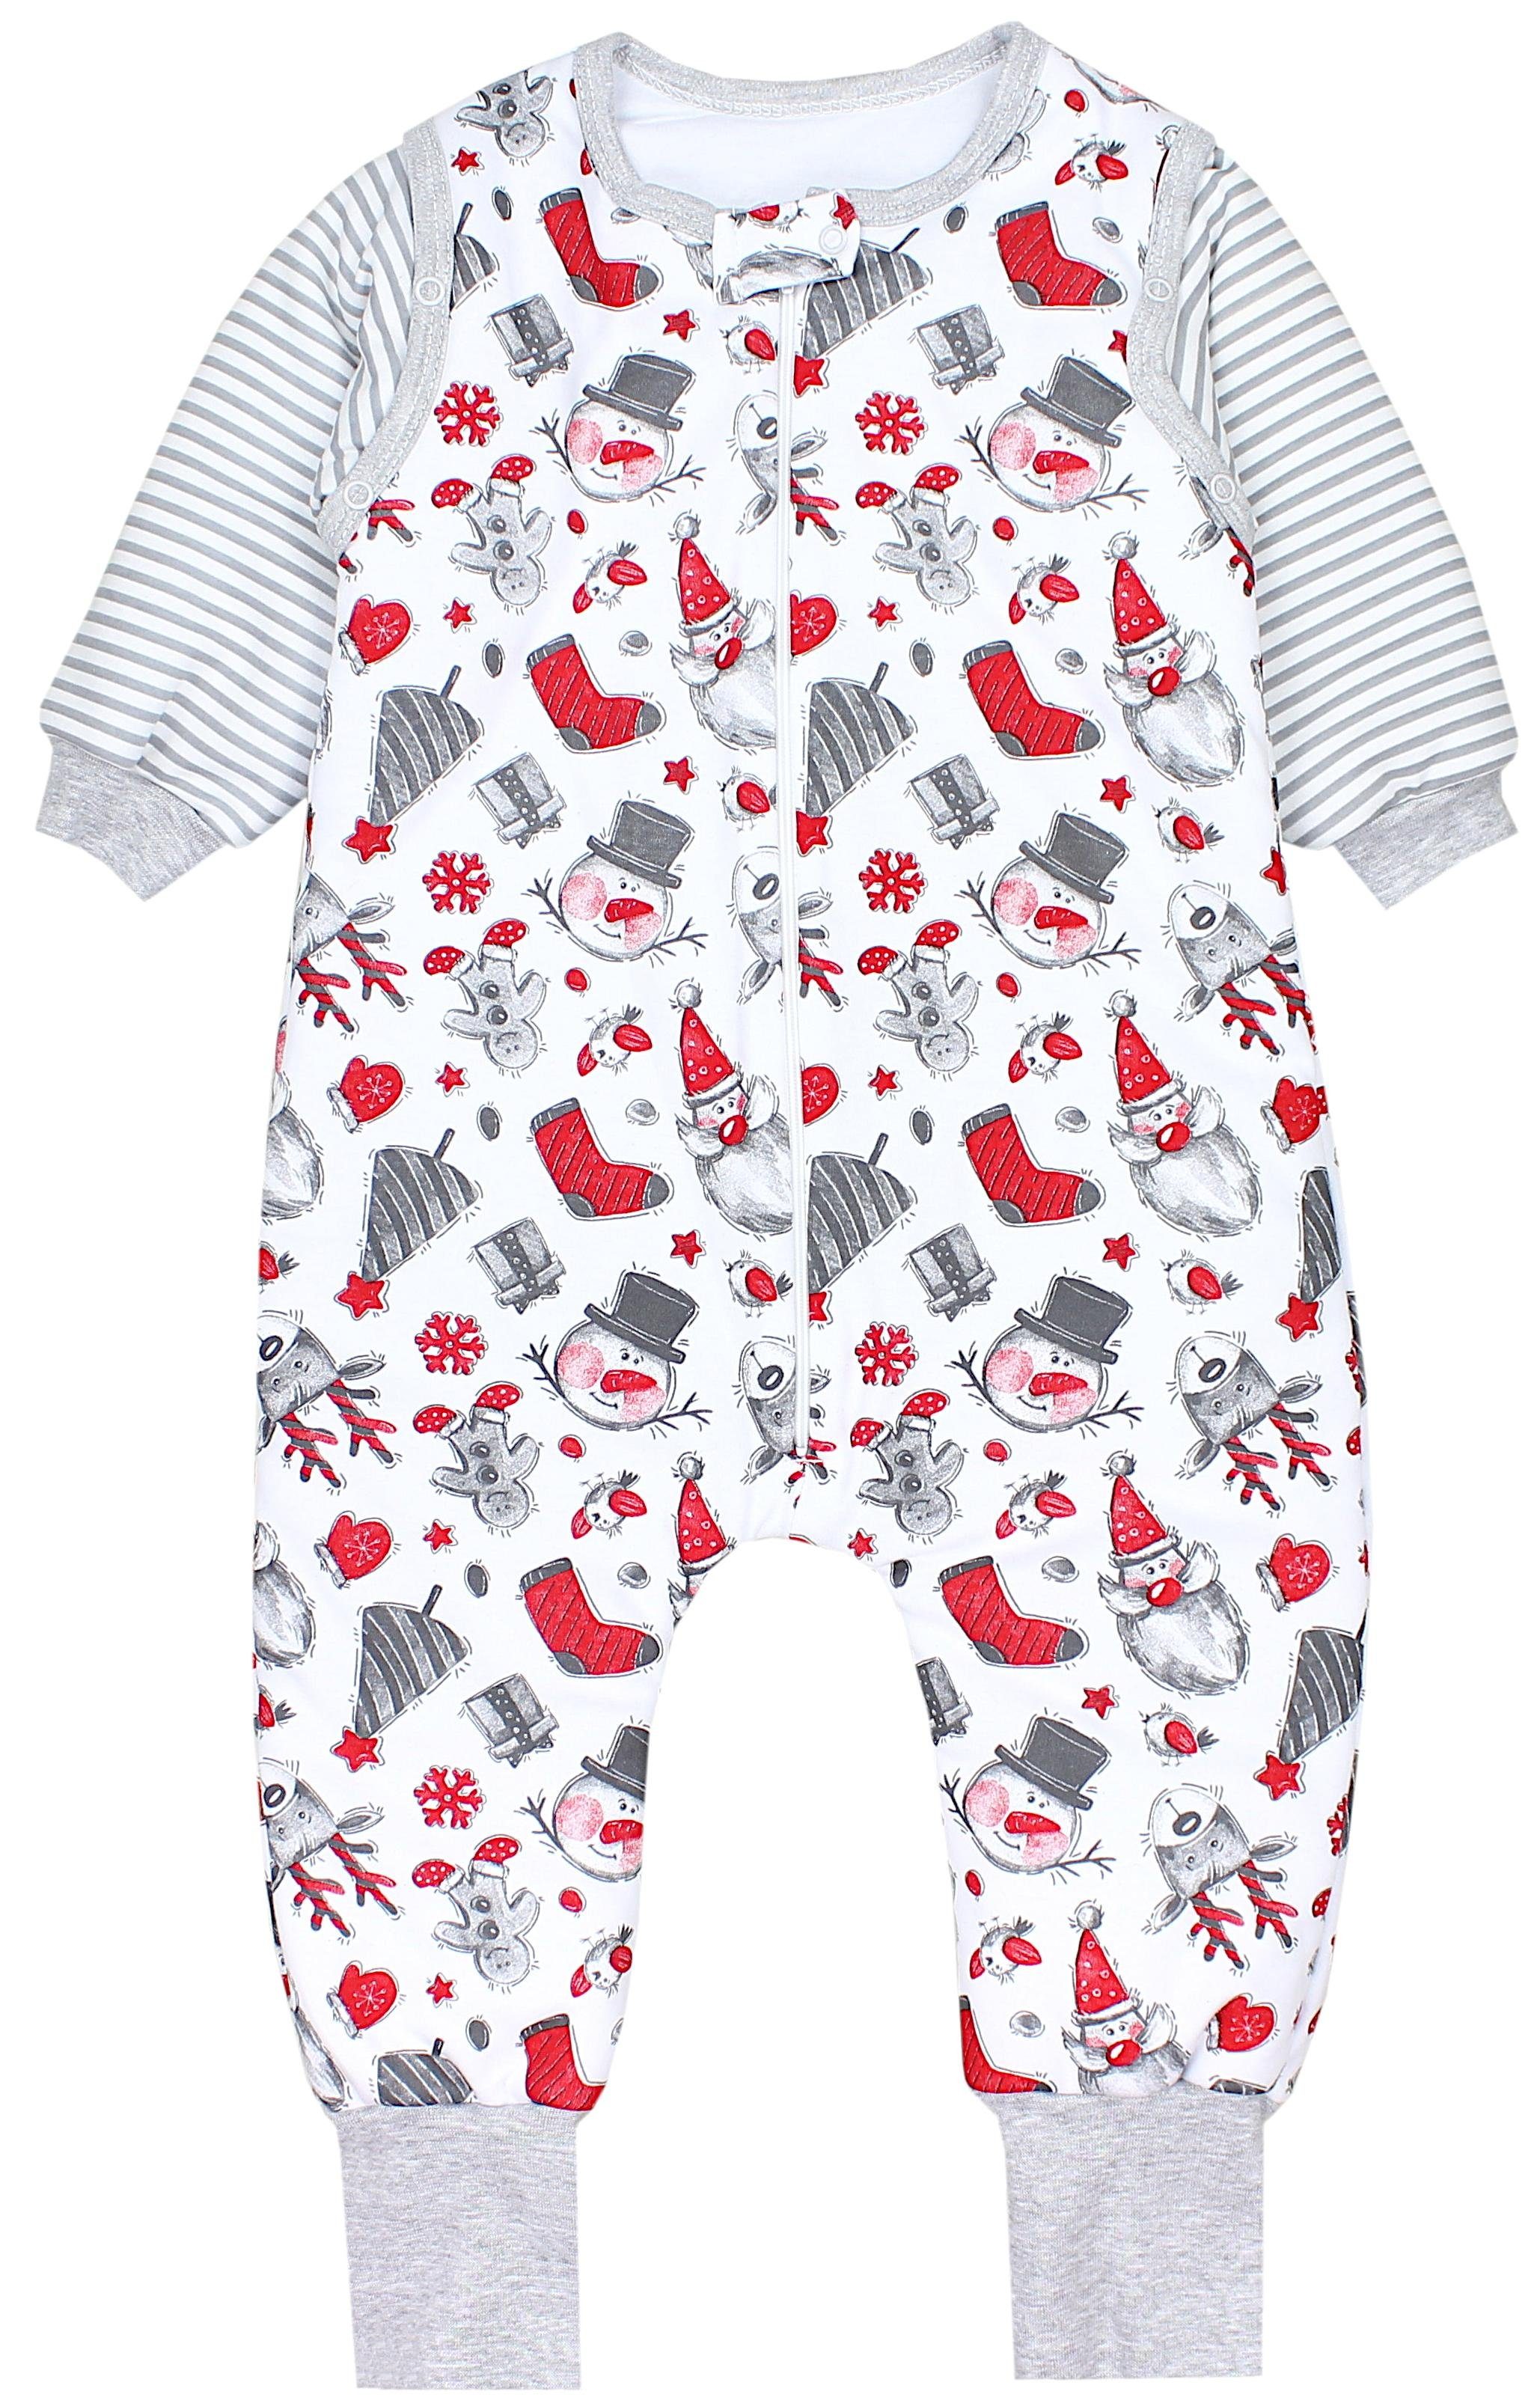 TupTam Babyschlafsack mit Beinen und Ärmel Winter OEKO-TEX zertifiziert Unisex Weihnachtsmann Schneemann Rot Weiß Grau